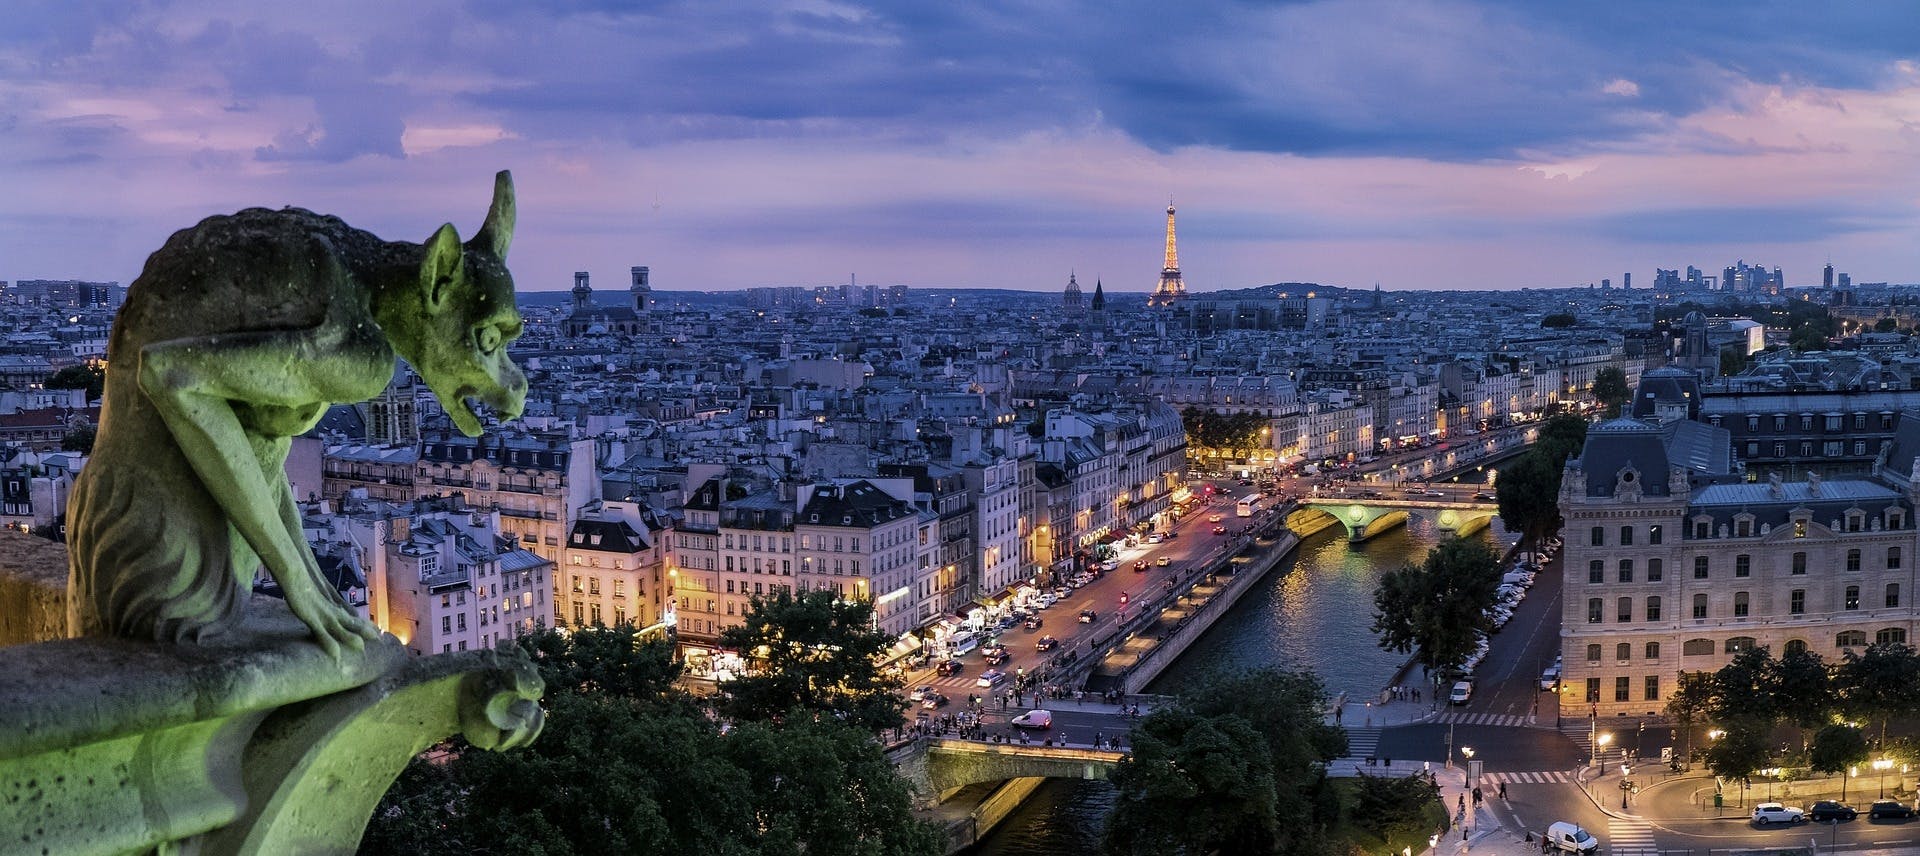 Zelfgeleide wandeling in Parijs met mysteriespel rond de Notre Dame